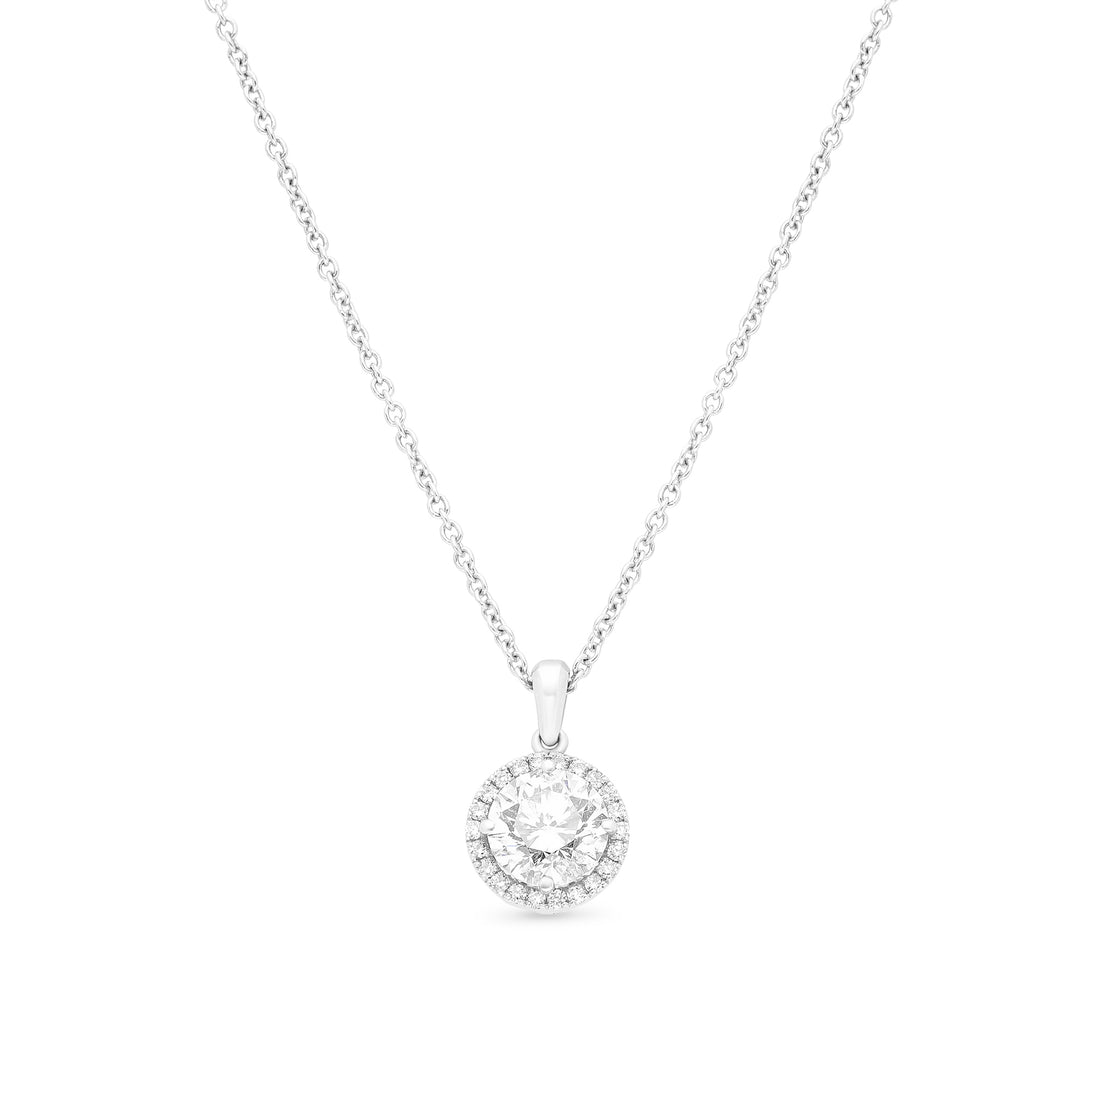 Diamond Halo Pendant Necklace - 1.3 Carat